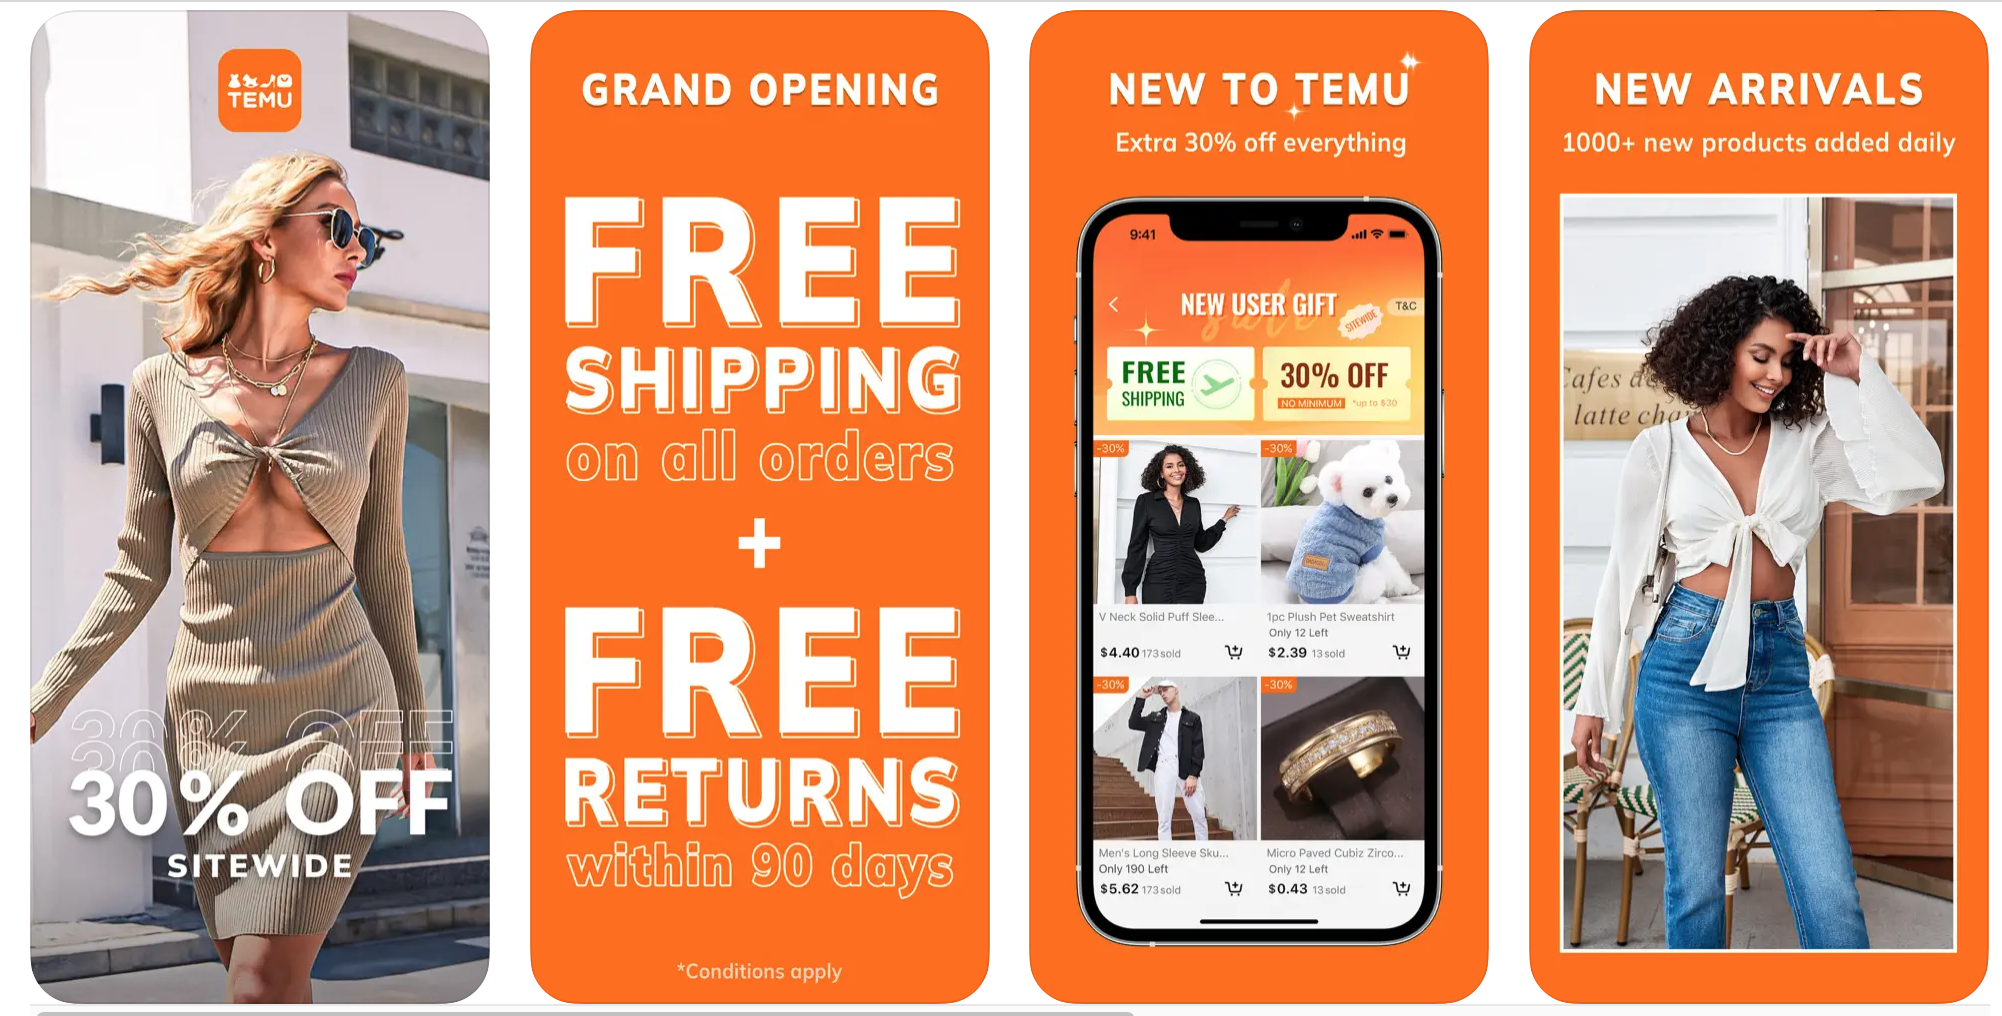 Temu’s hot streak, Walmart’s m-commerce & an Apple XR App Store • TechCrunch